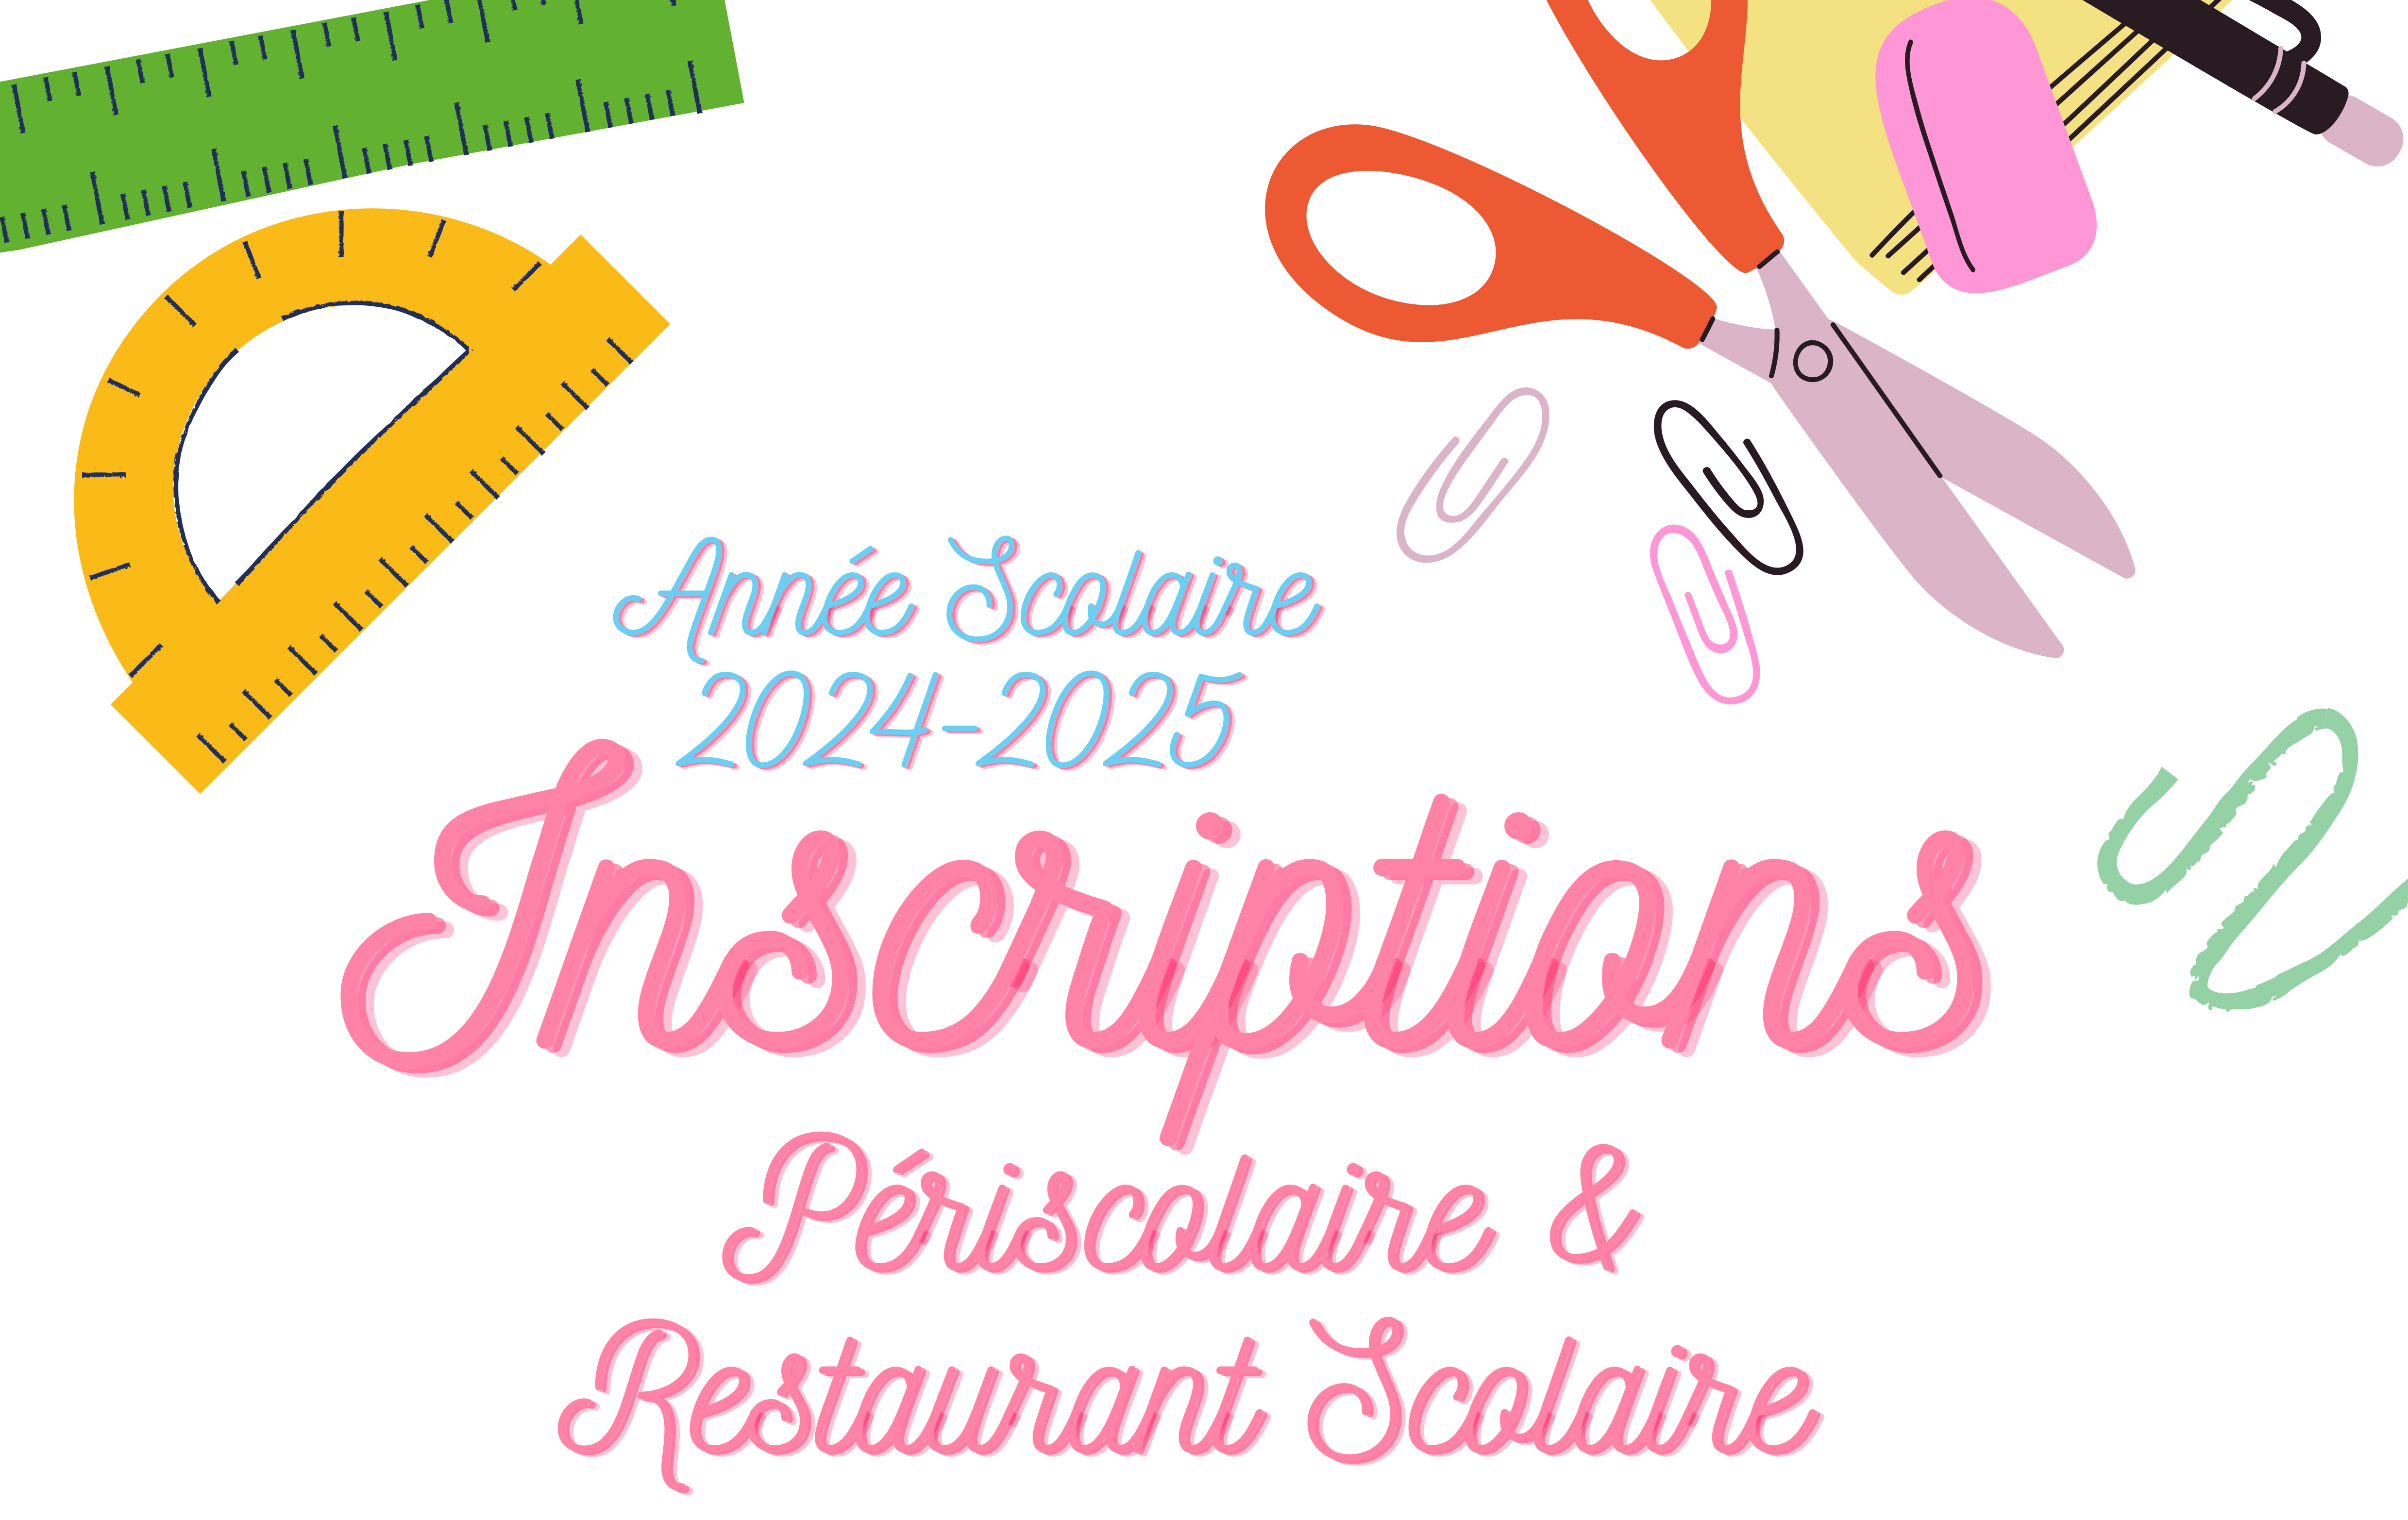 Inscriptions périscolaire & restaurant scolaire 2024-2025